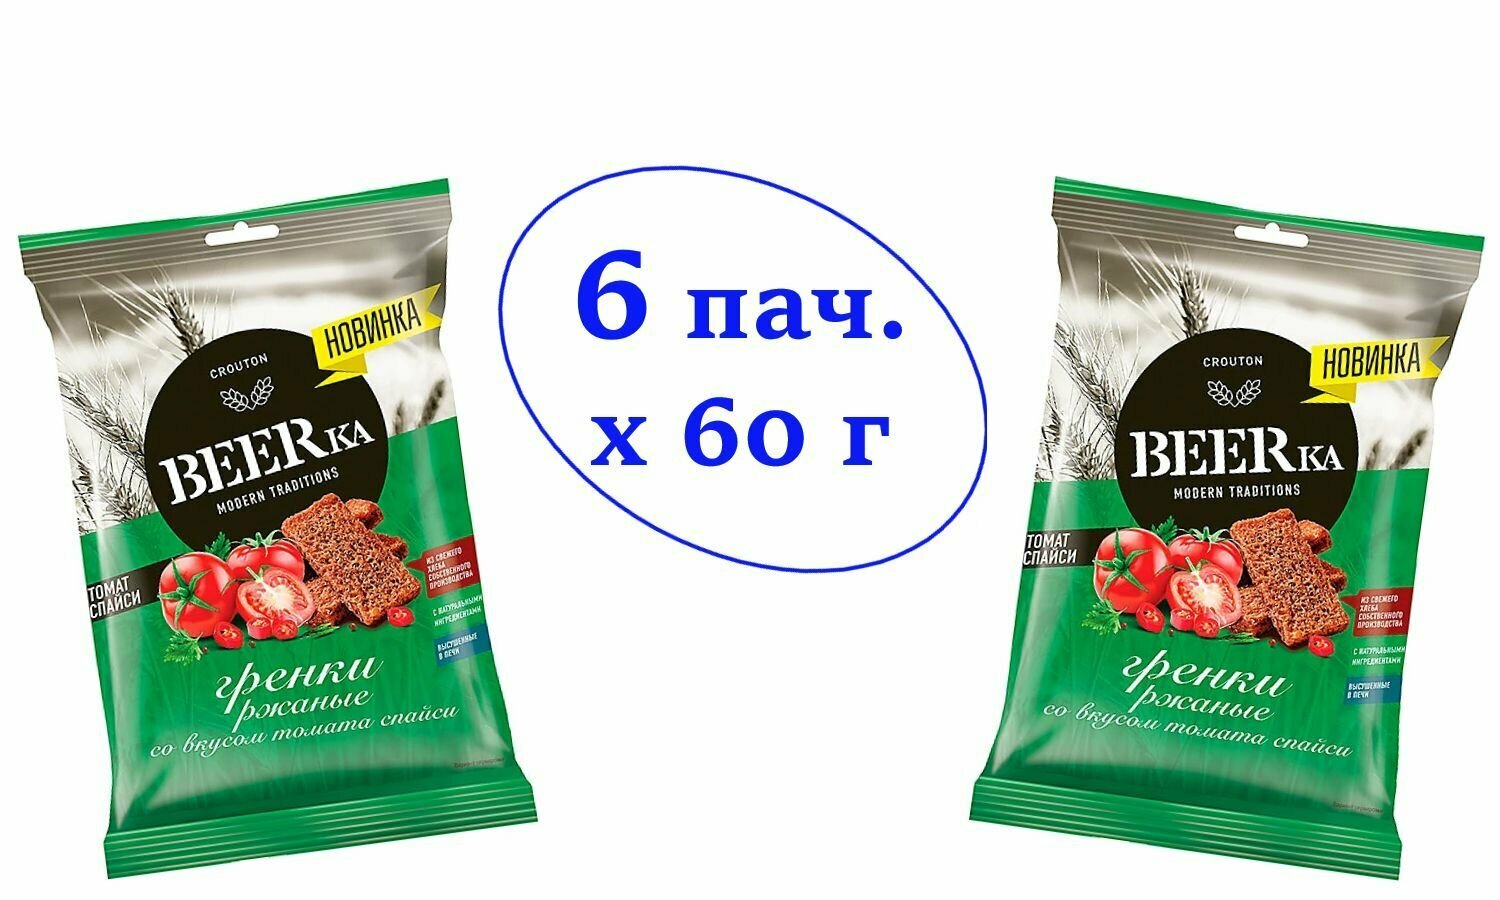 Гренки со вкусом томата спайси, Beerka, 60 г